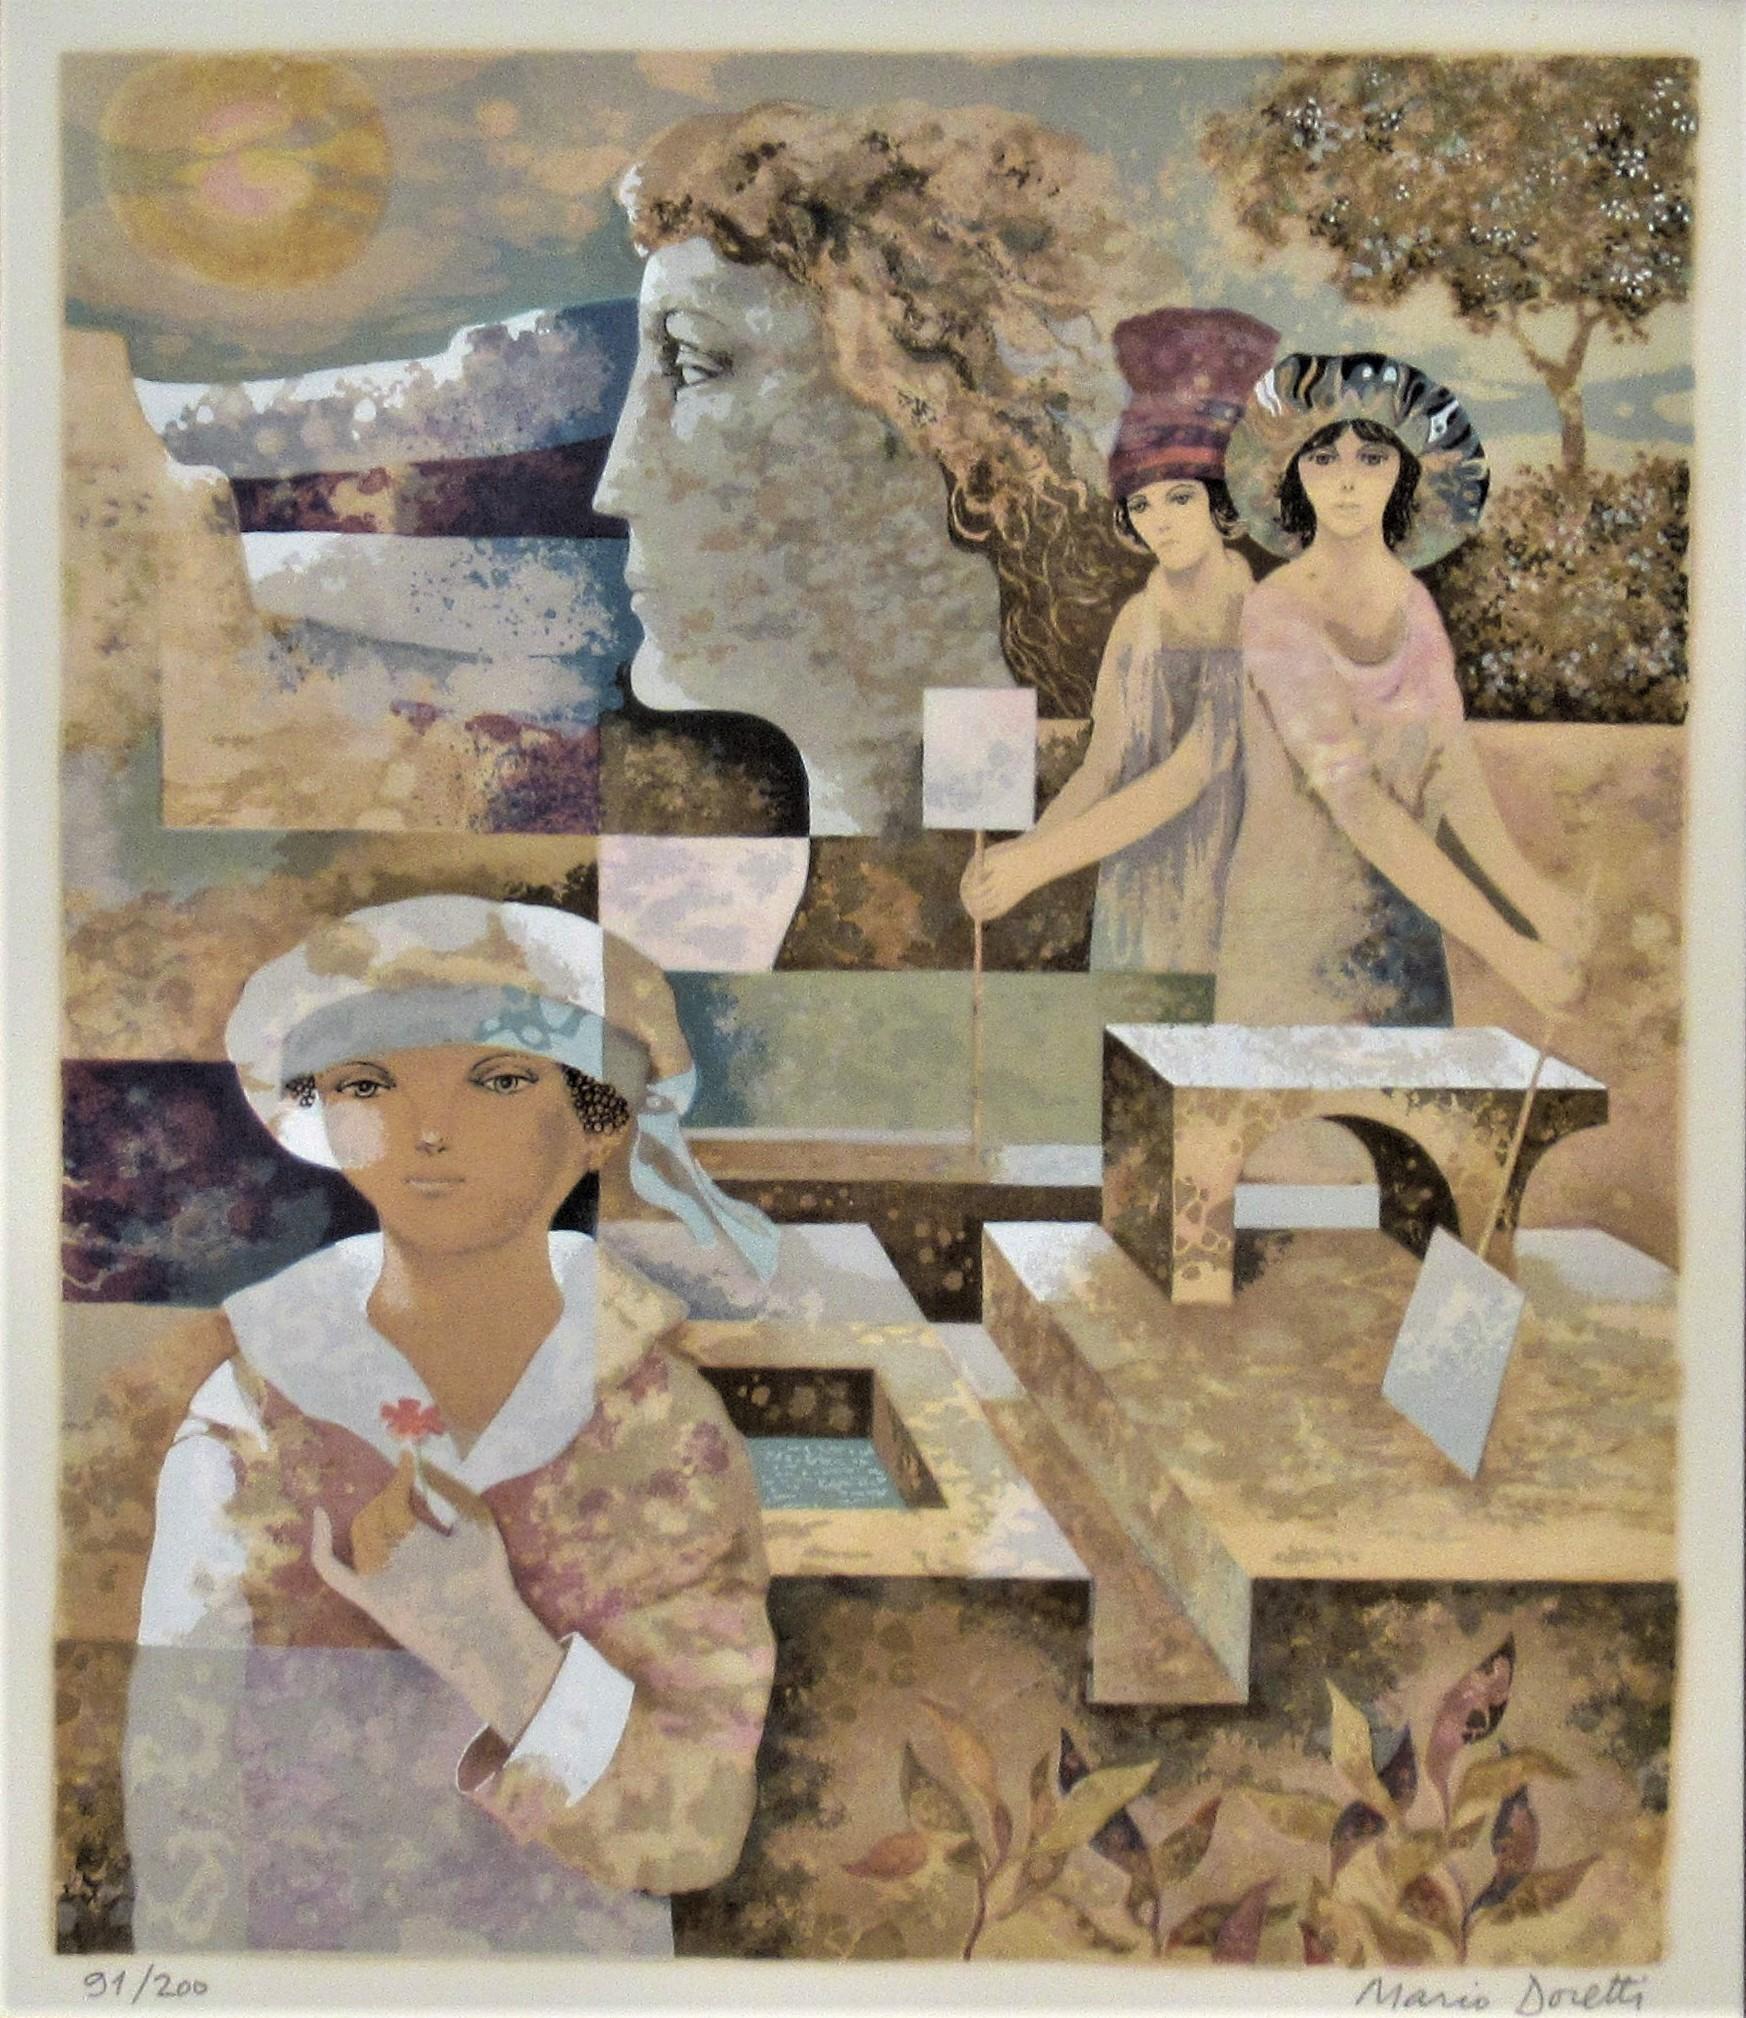 Surrealist Scene with Lady - Print by Mario Doretti